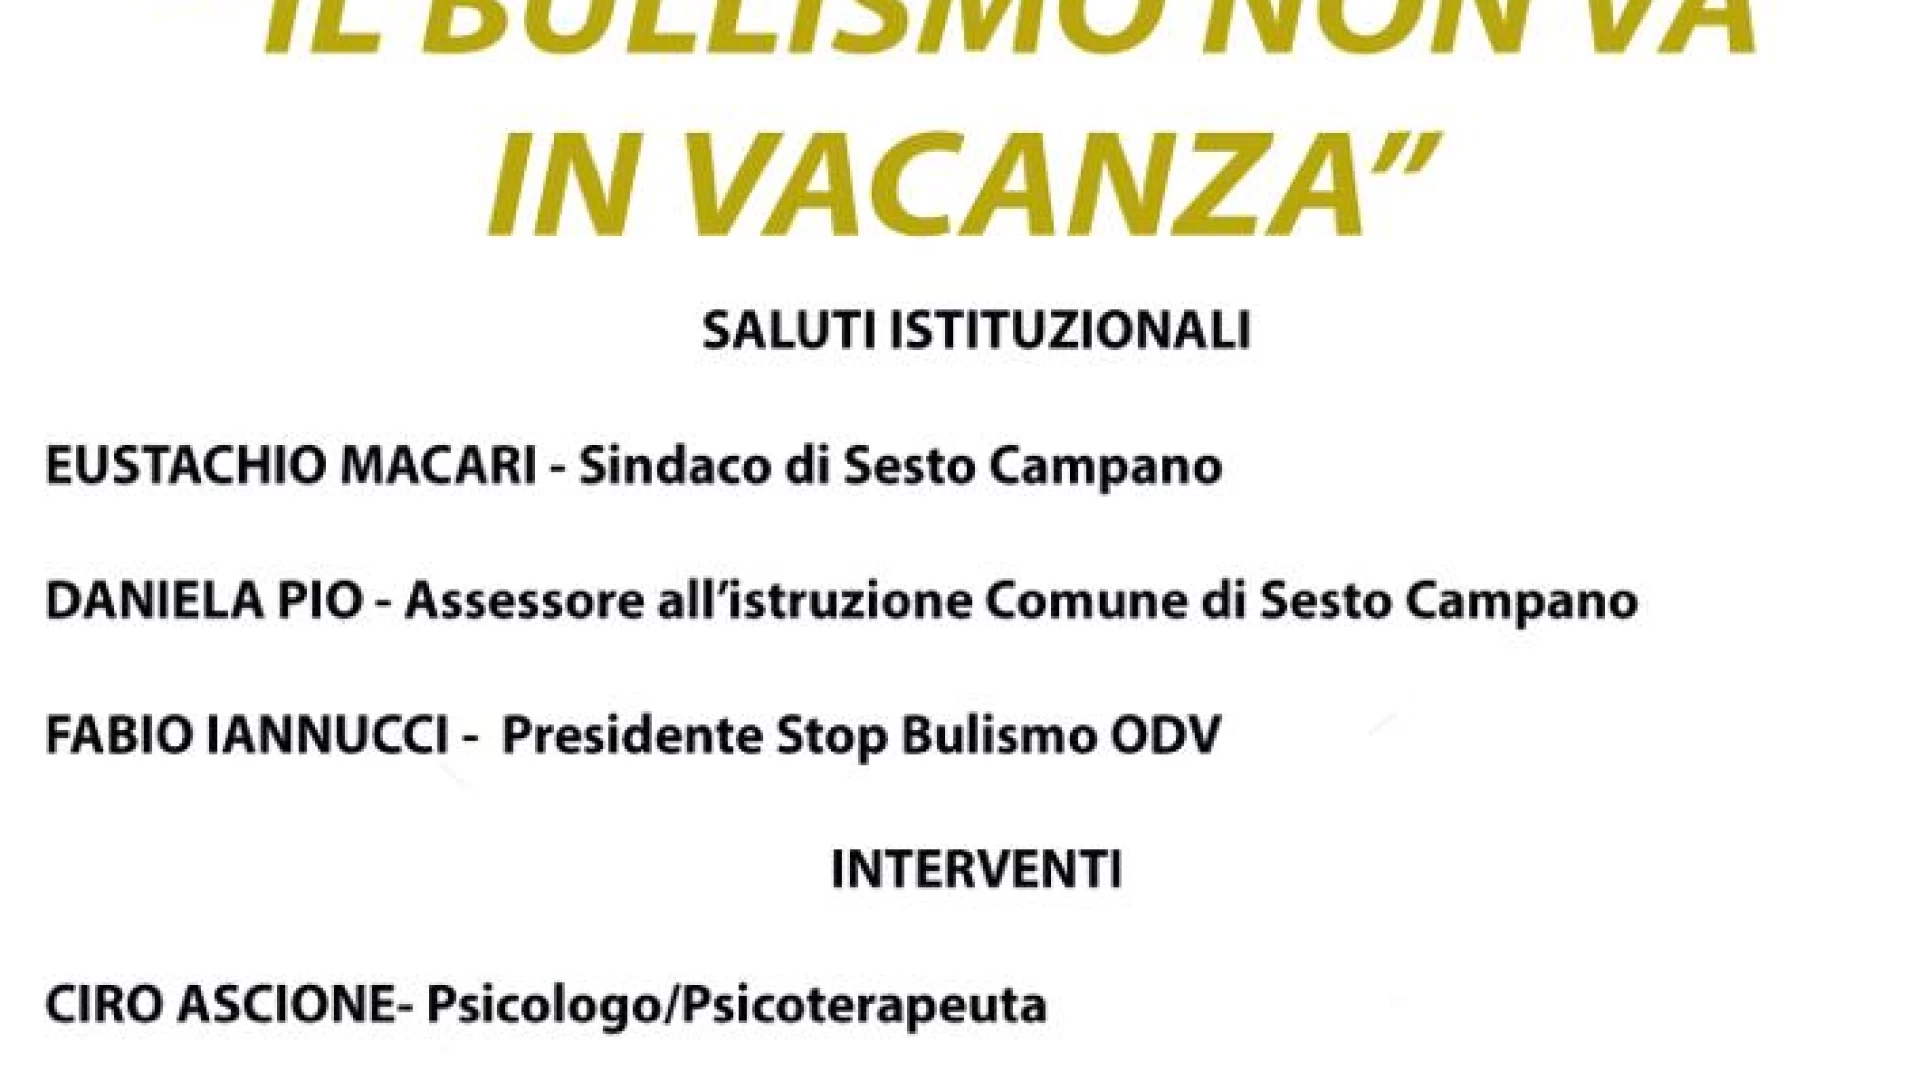 Sesto Campano: “Il Bullismo non va in vacanza”, l’iniziativa verrà presentata venerdì 28 luglio.